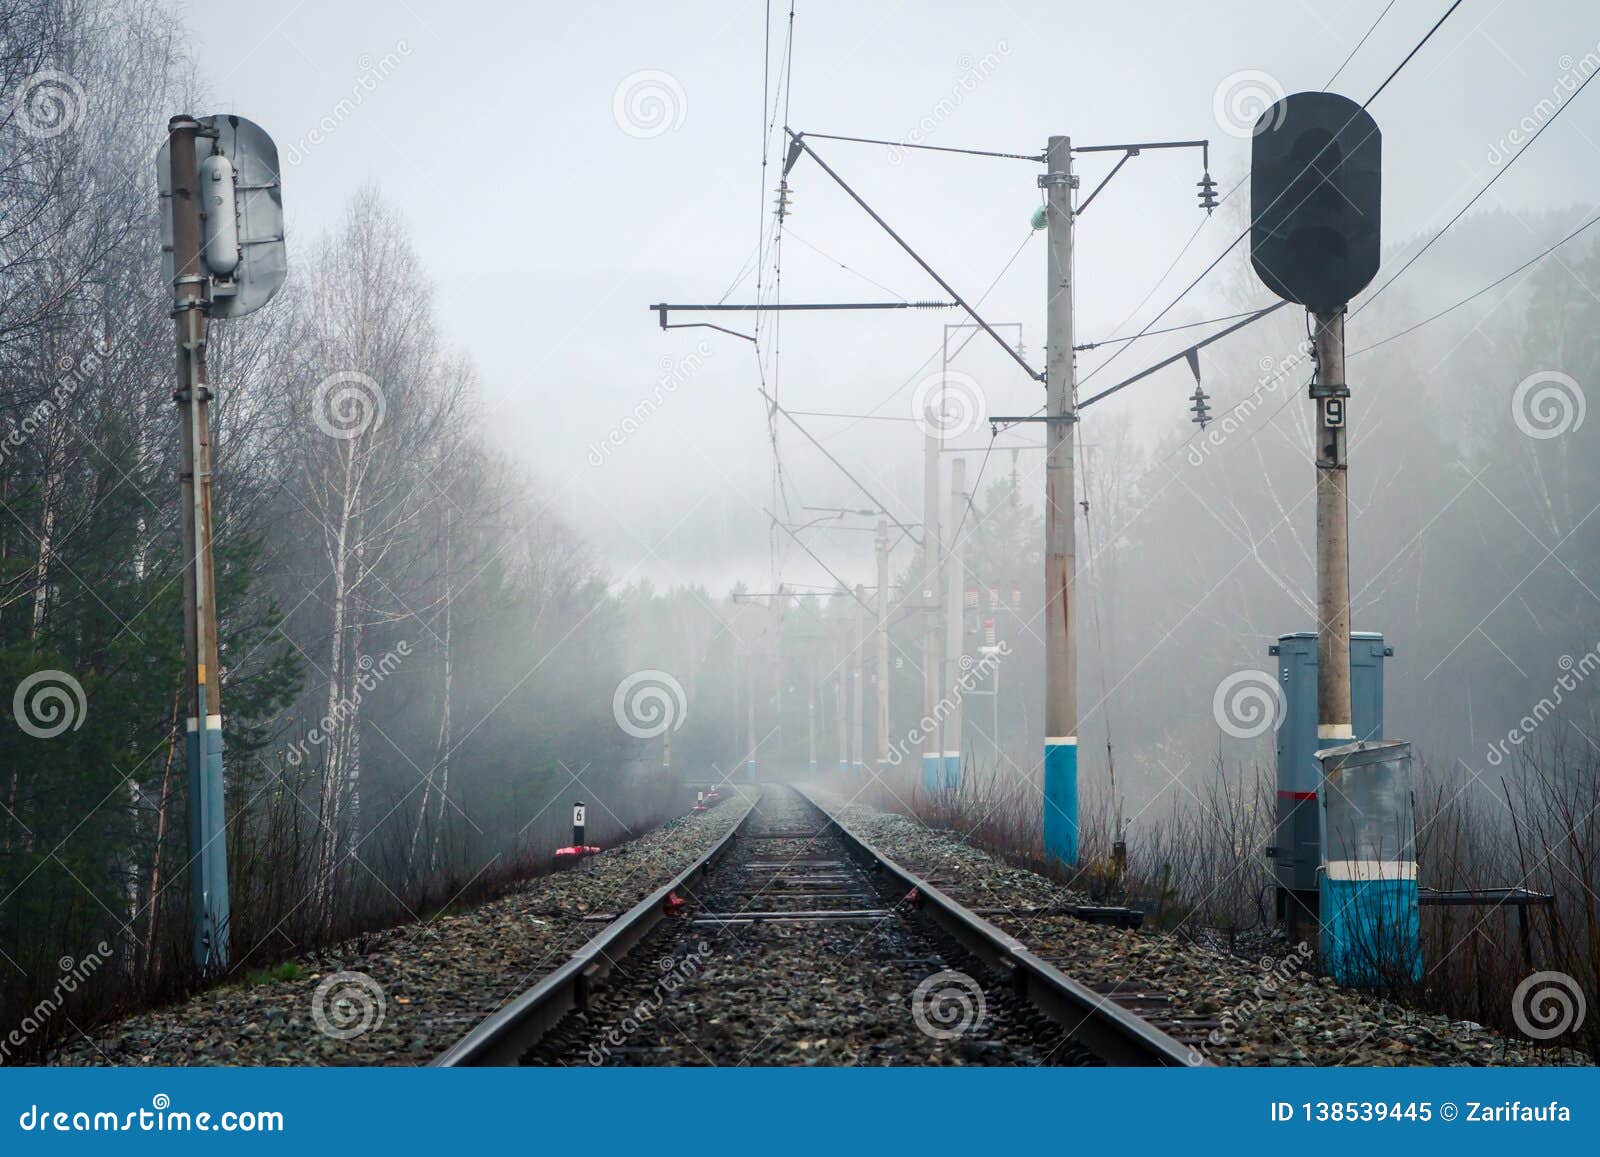 Vista del ferrocarril, de los semáforos y de los polos eléctricos en niebla en primavera. Vista del ferrocarril, de los semáforos y de los polos eléctricos en niebla por la tarde de la primavera